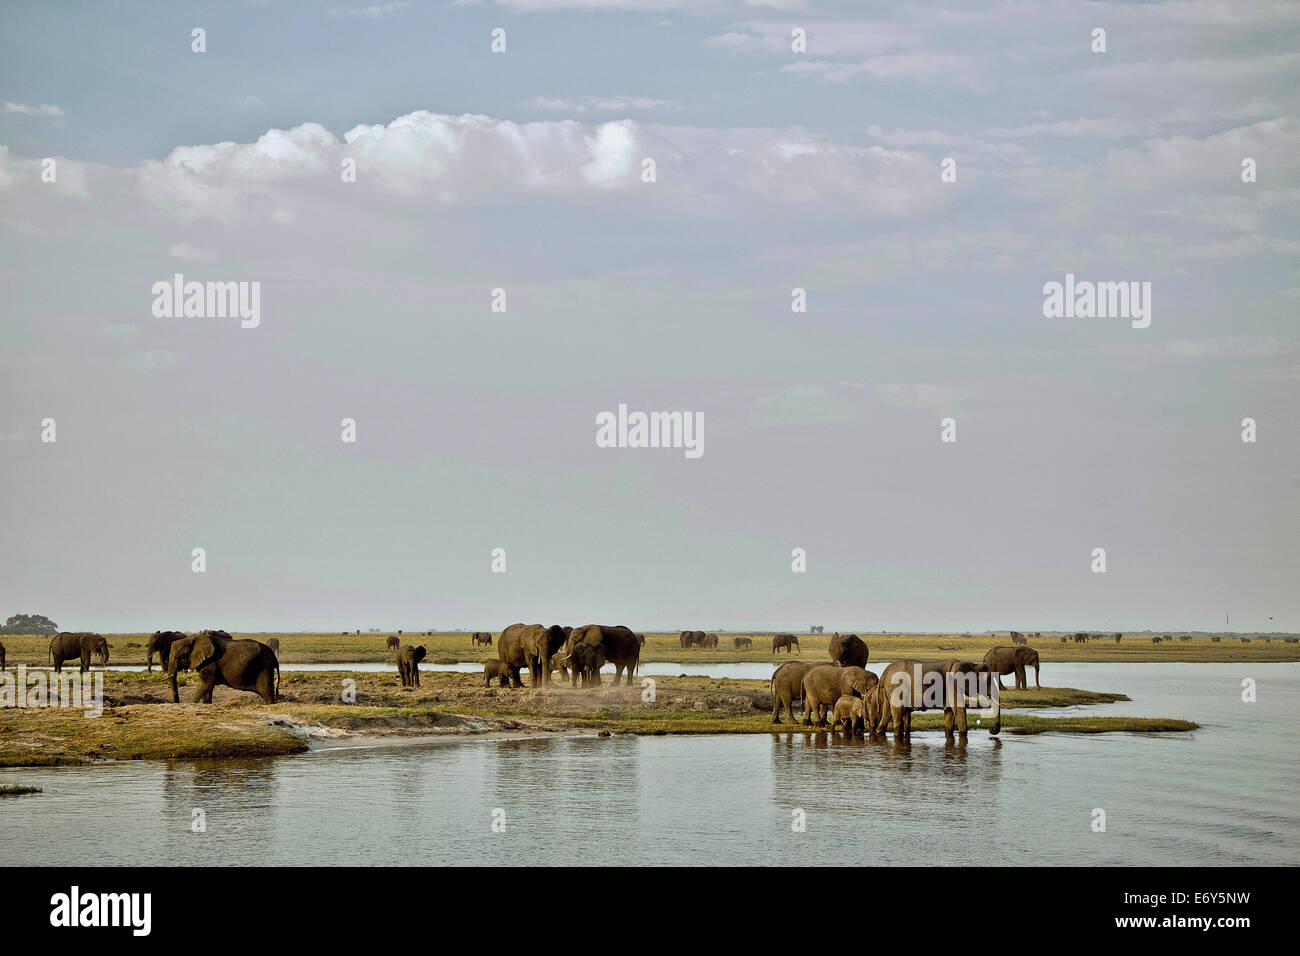 Les éléphants sur les rives de la rivière Chobe, au Botswana, l'Afrique Banque D'Images